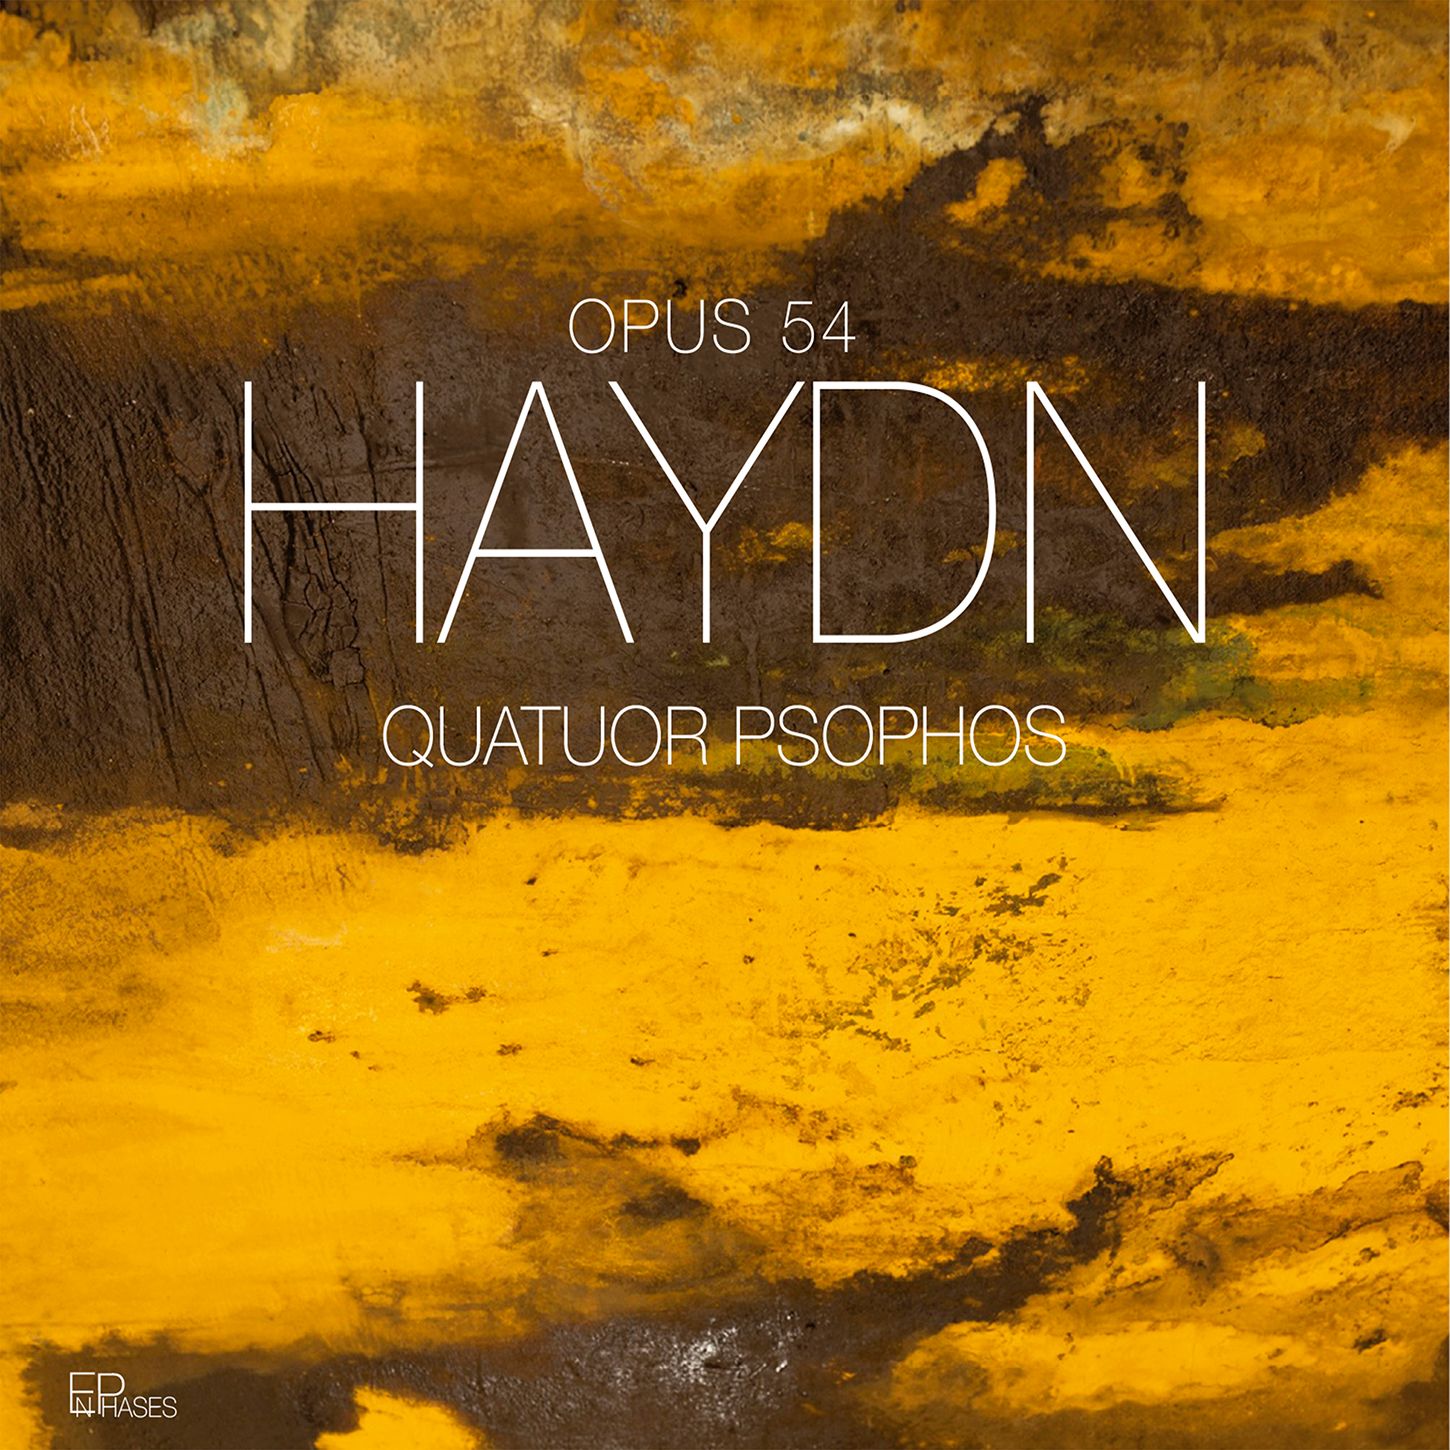 Haydn's Op. 54: Quatuor Psophos